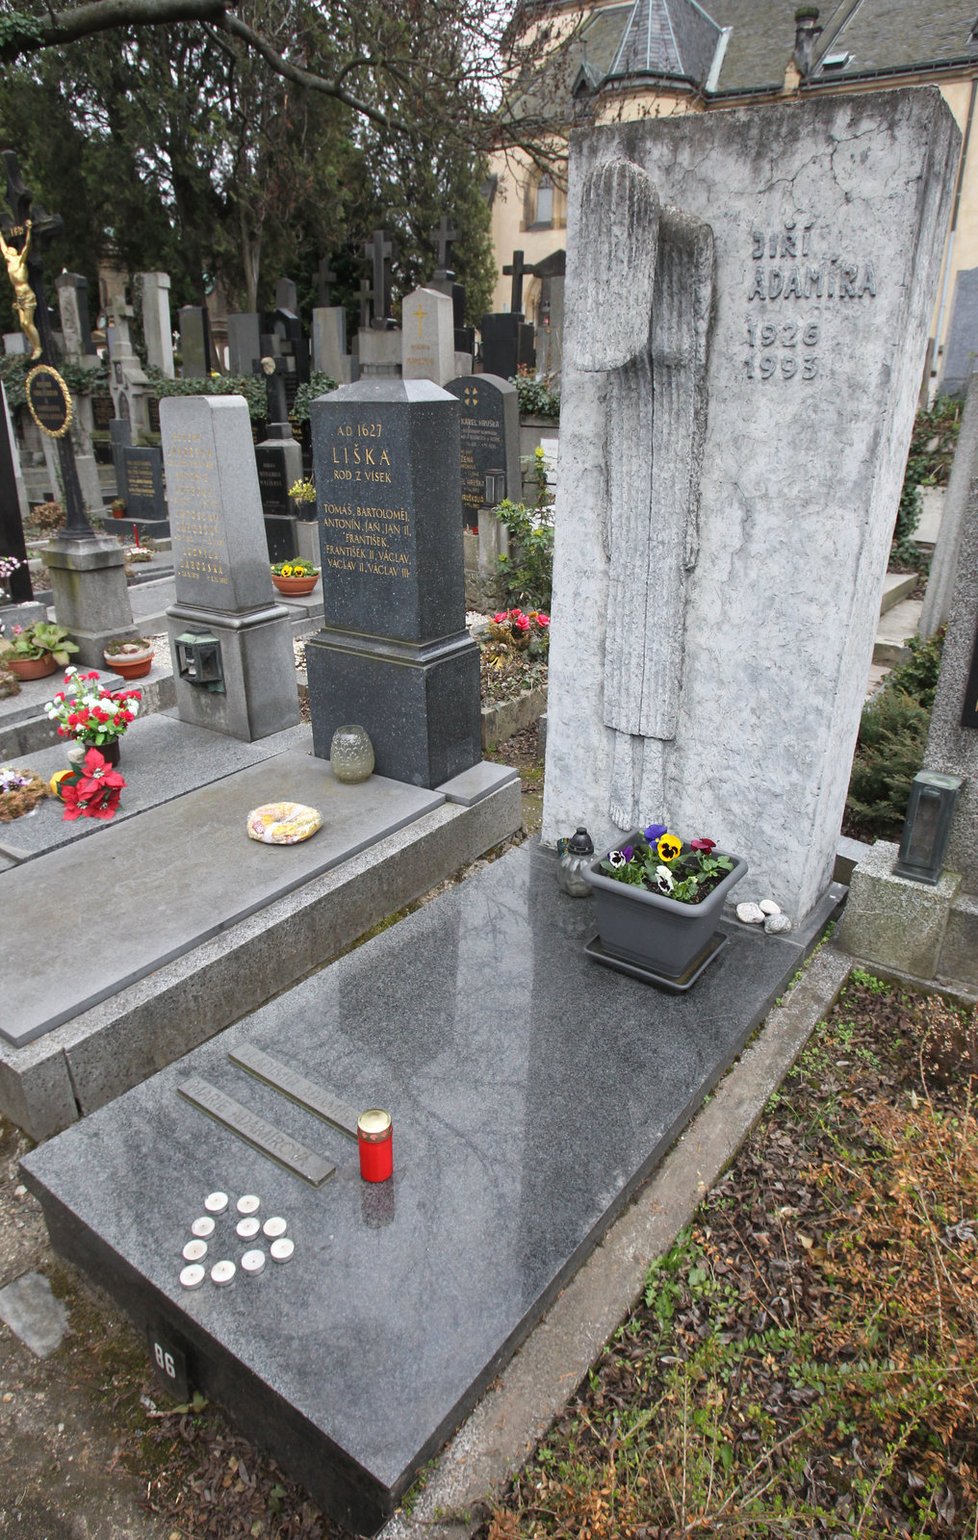 Hrob Jiřího Adamíry na vyšehradském hřbitově zdobilo srdce ze svíček.